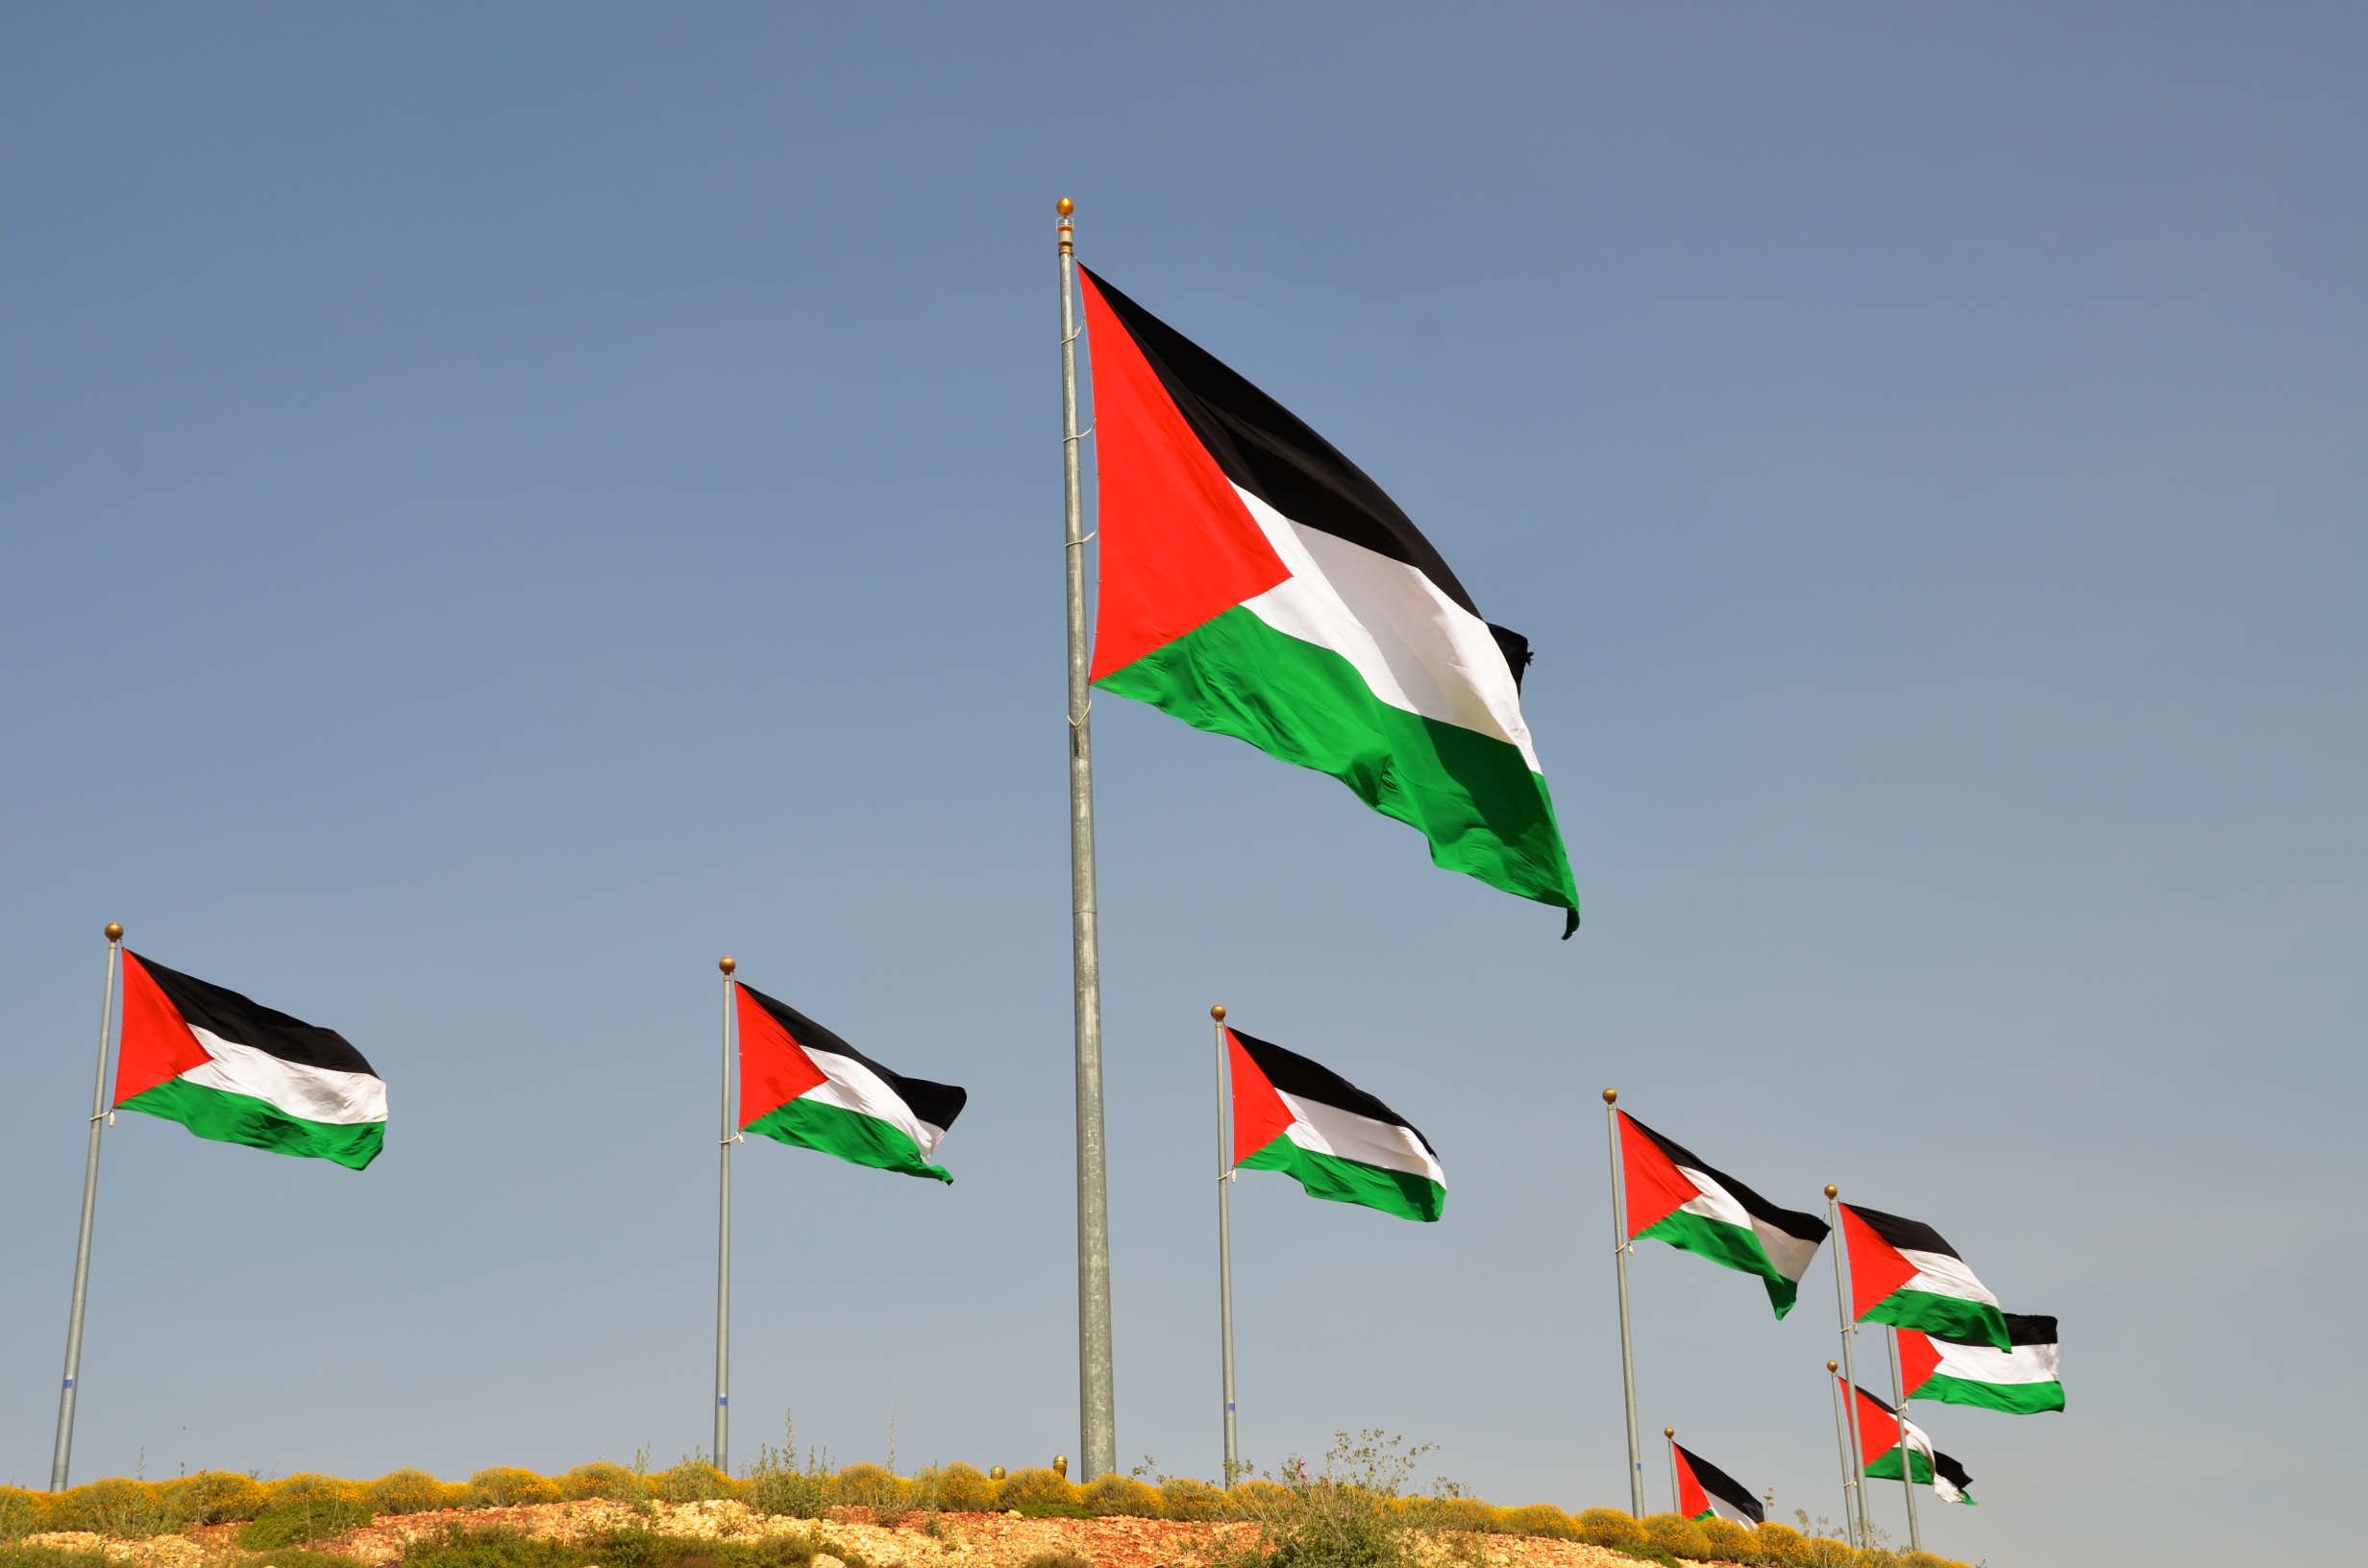 Il riconoscimento dello Stato di Palestina è urgente: primo passo verso una politica di Pace possibile